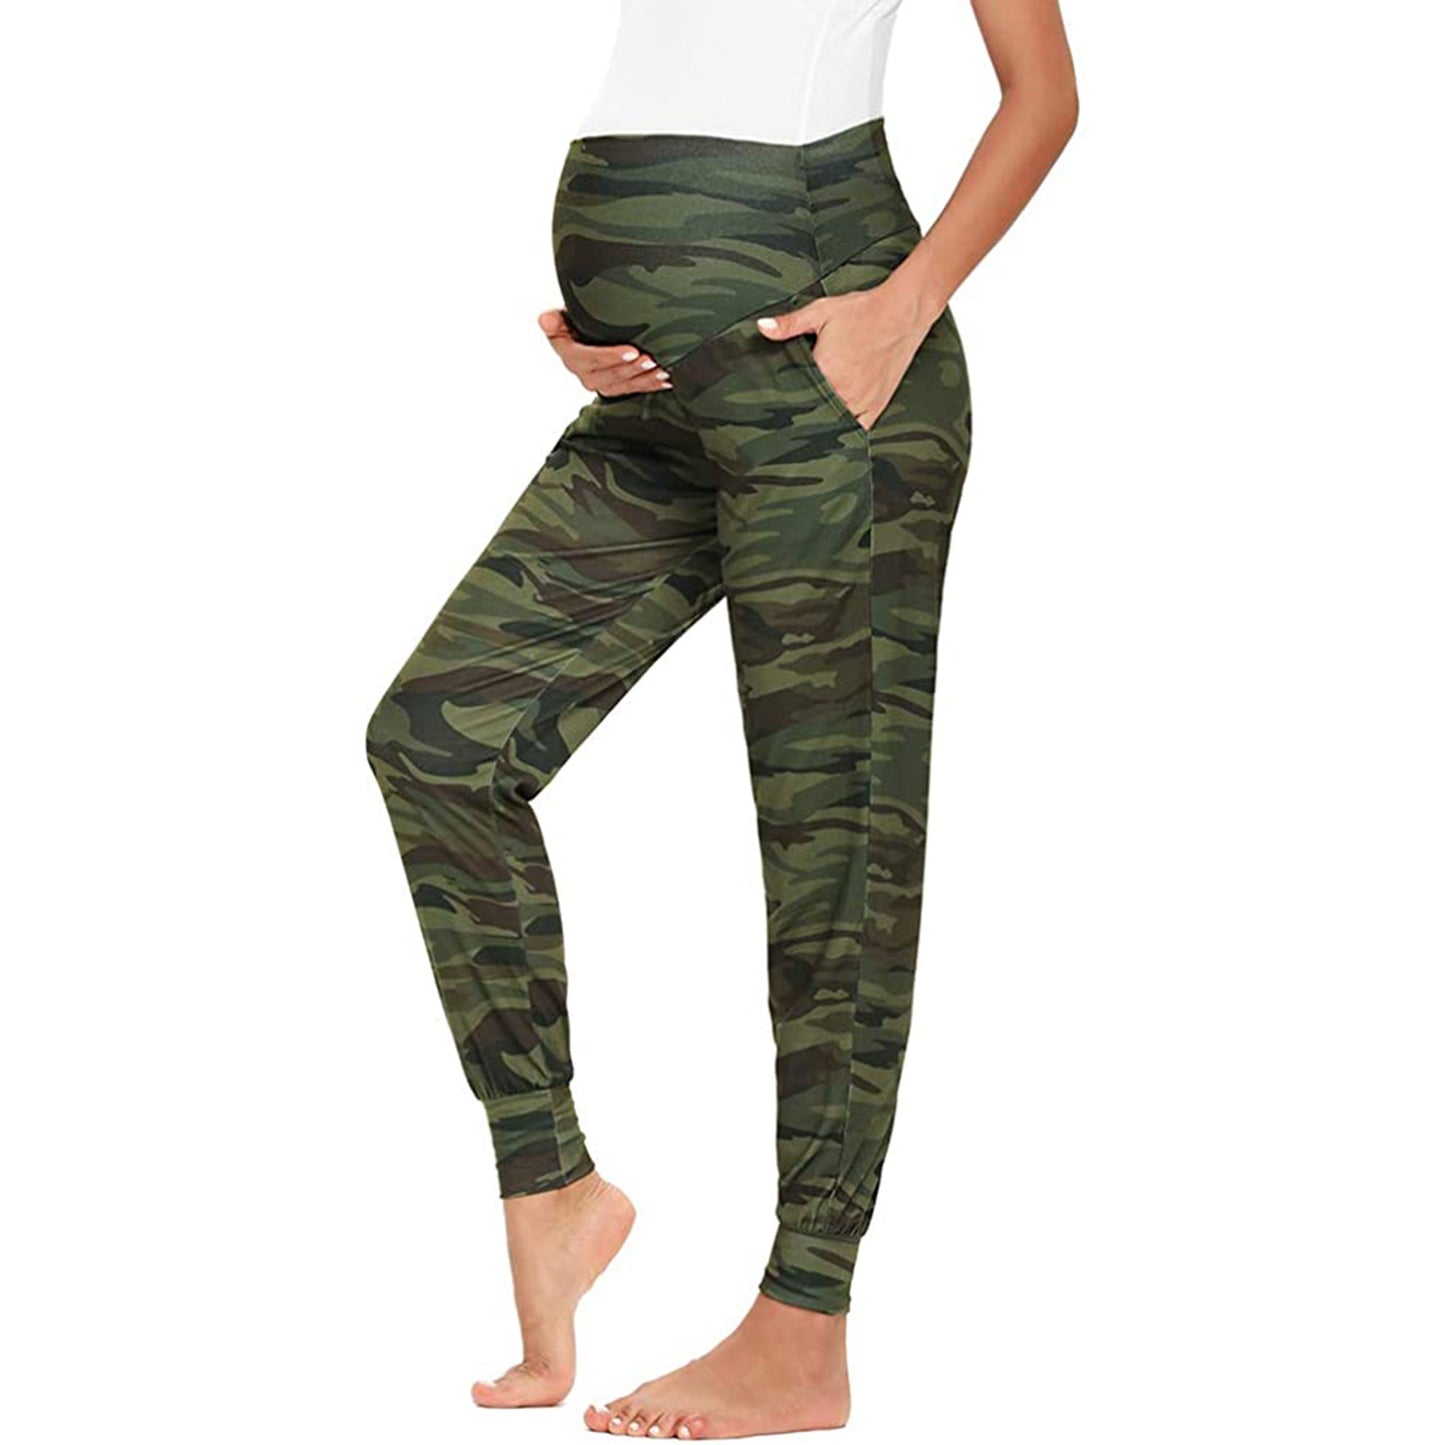 Pregnant Women Print Yoga Pants